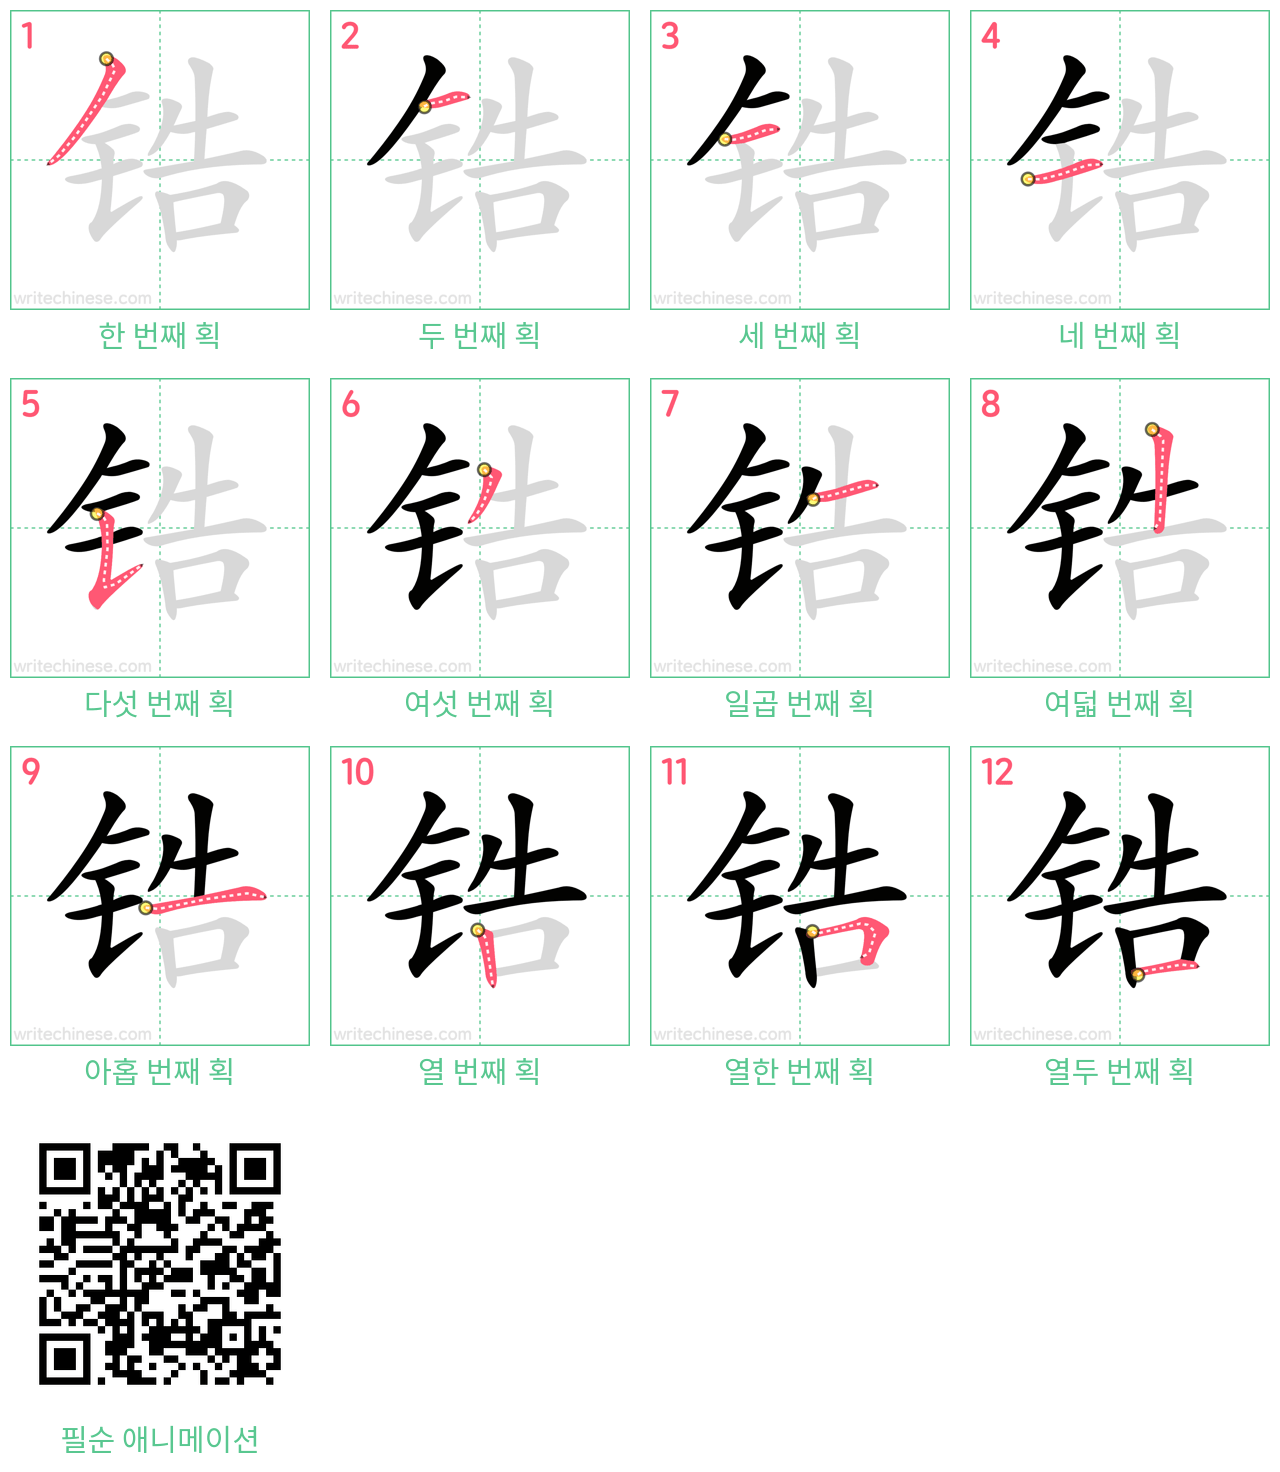 锆 step-by-step stroke order diagrams